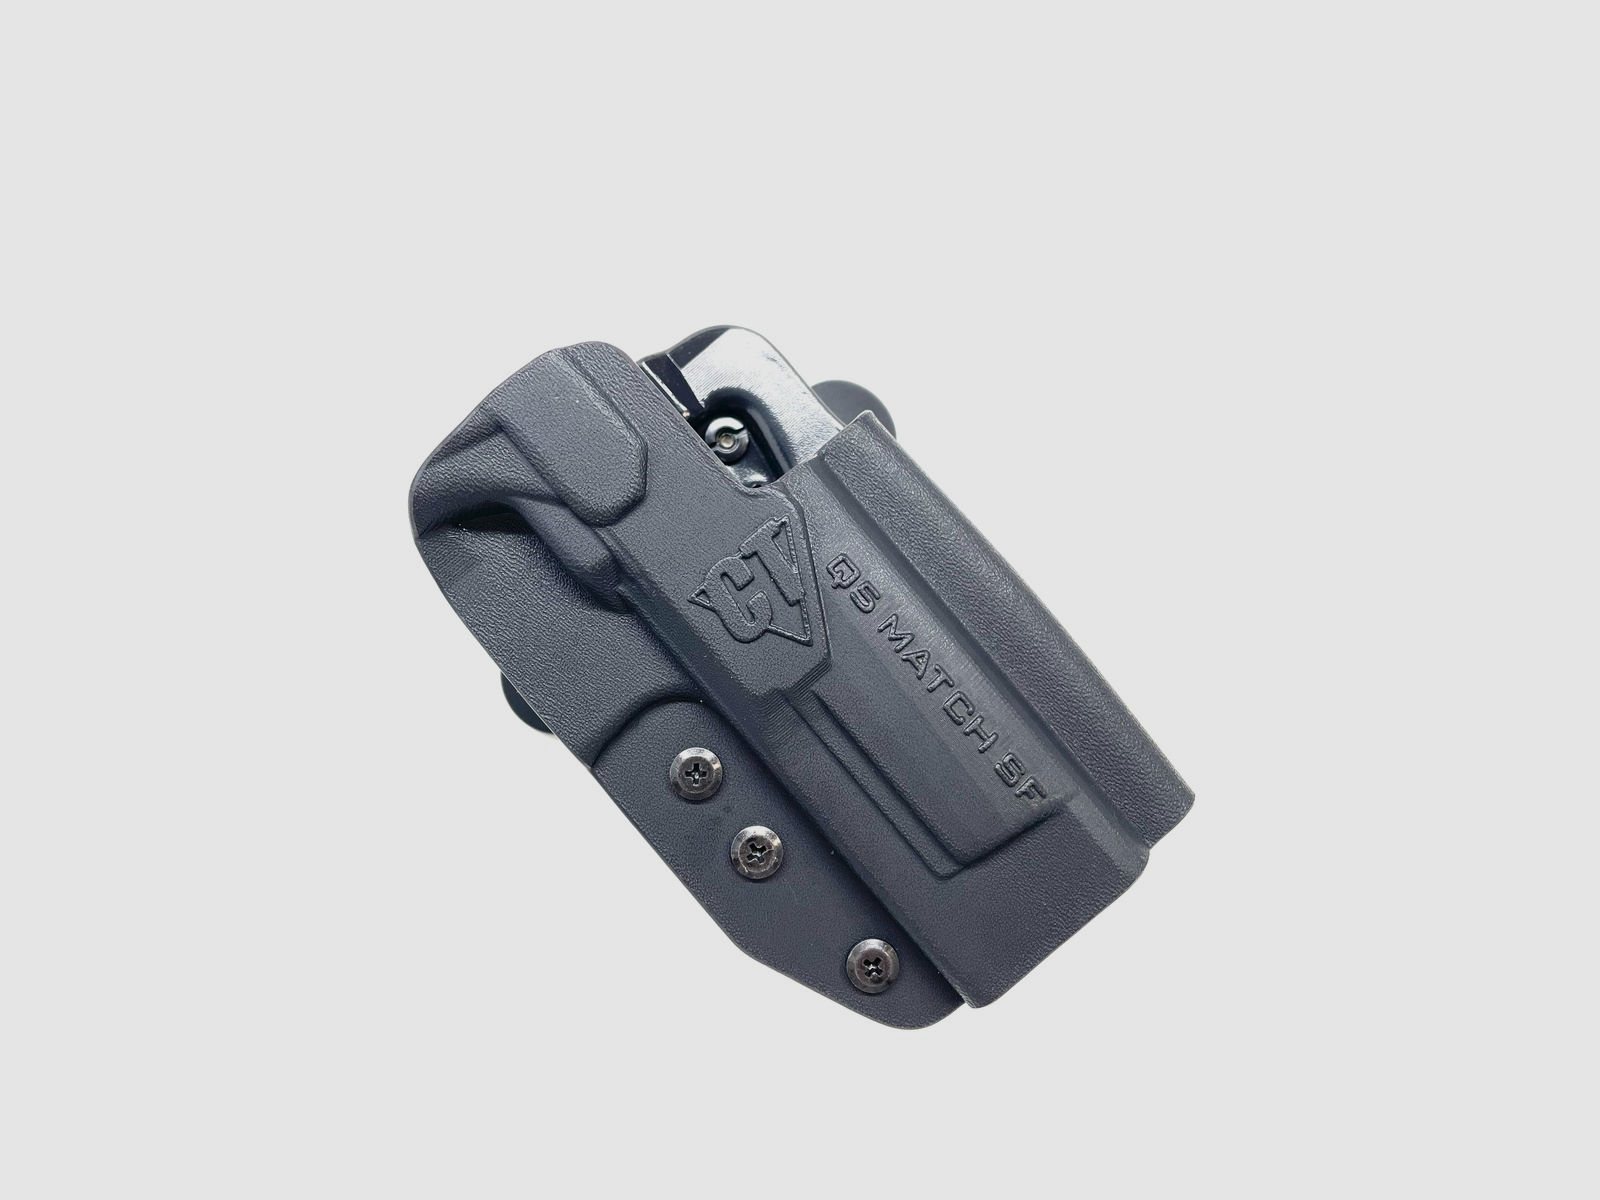 Comp-Tac Kydex Holster INTERNATIONAL für Walther Pistole Q5 MatcH Steel Frame 5" rechts schwarz